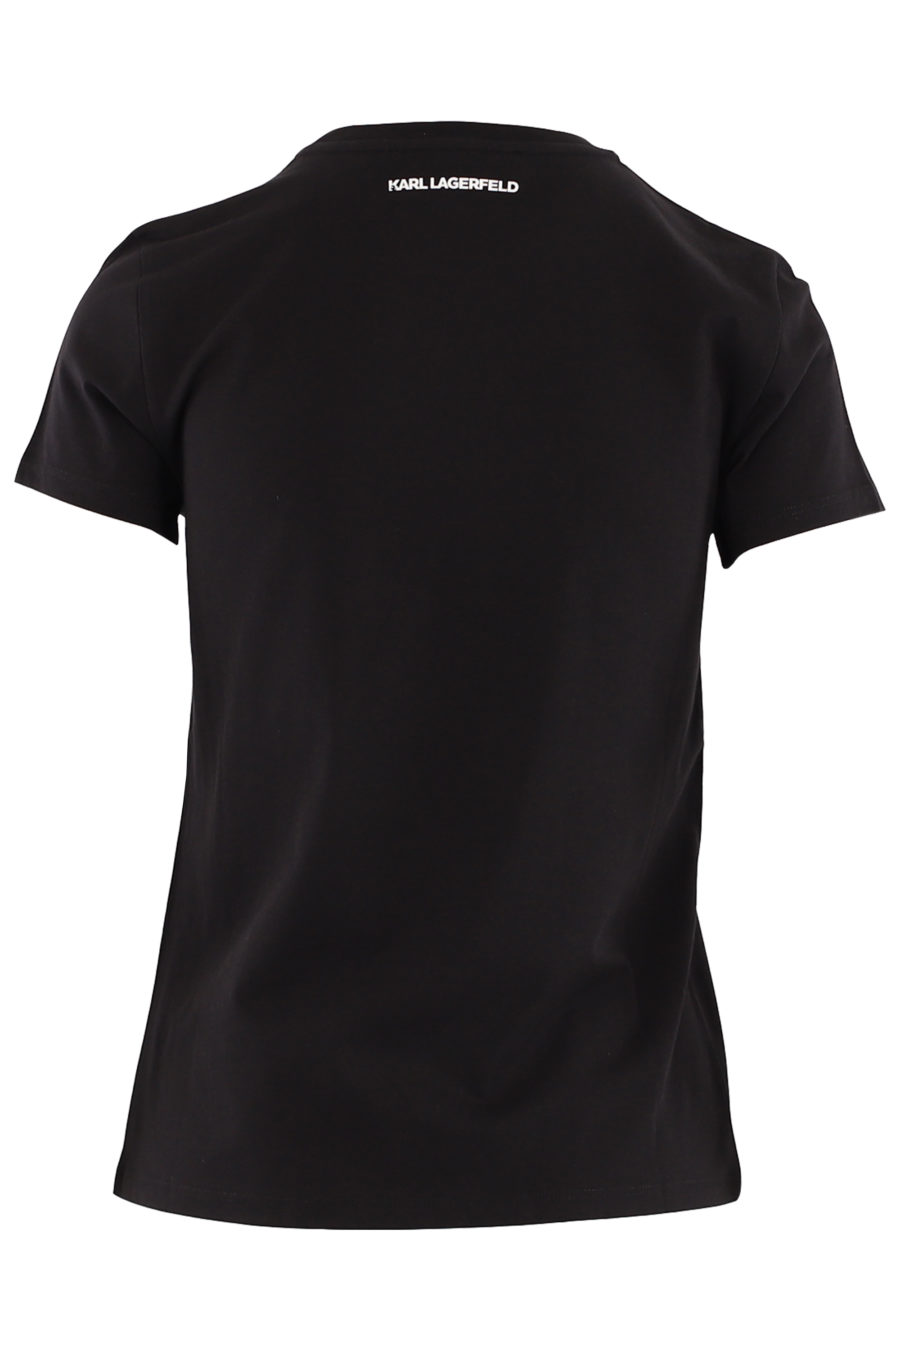 Schwarzes T-Shirt mit Strasssteinen "Karl und Choupette" - 8db21ae36221fb180b479347392e11437ff1760d